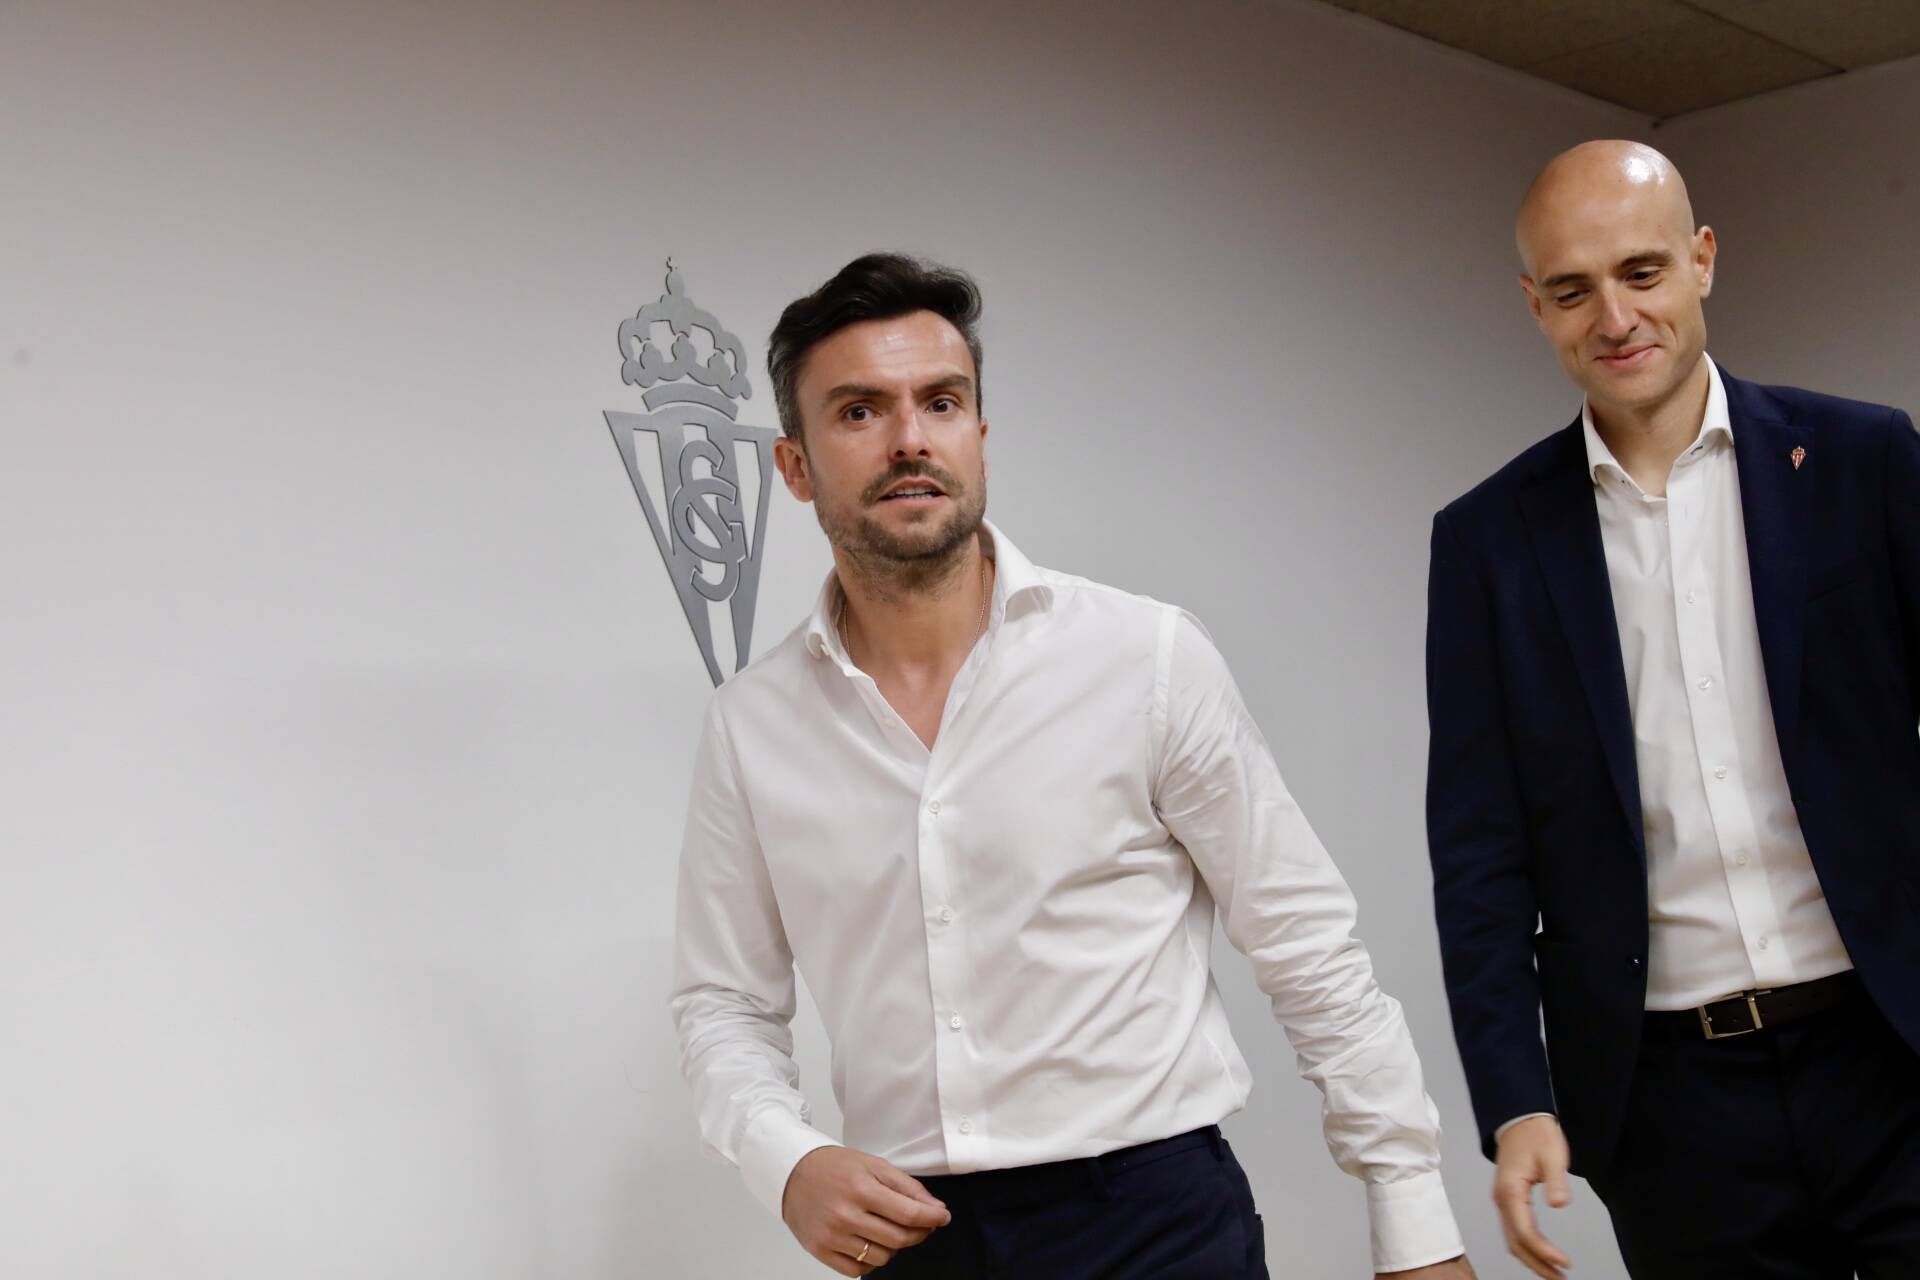 La llegada a Asturias este lunes de Rubén Albés como nuevo entrenador del Sporting acelerará los procesos pendientes, tanto de cesiones como de incorporaciones paralizadas hasta el fichaje del nuevo técnico, que ya está al tanto de las intenciones del club.

